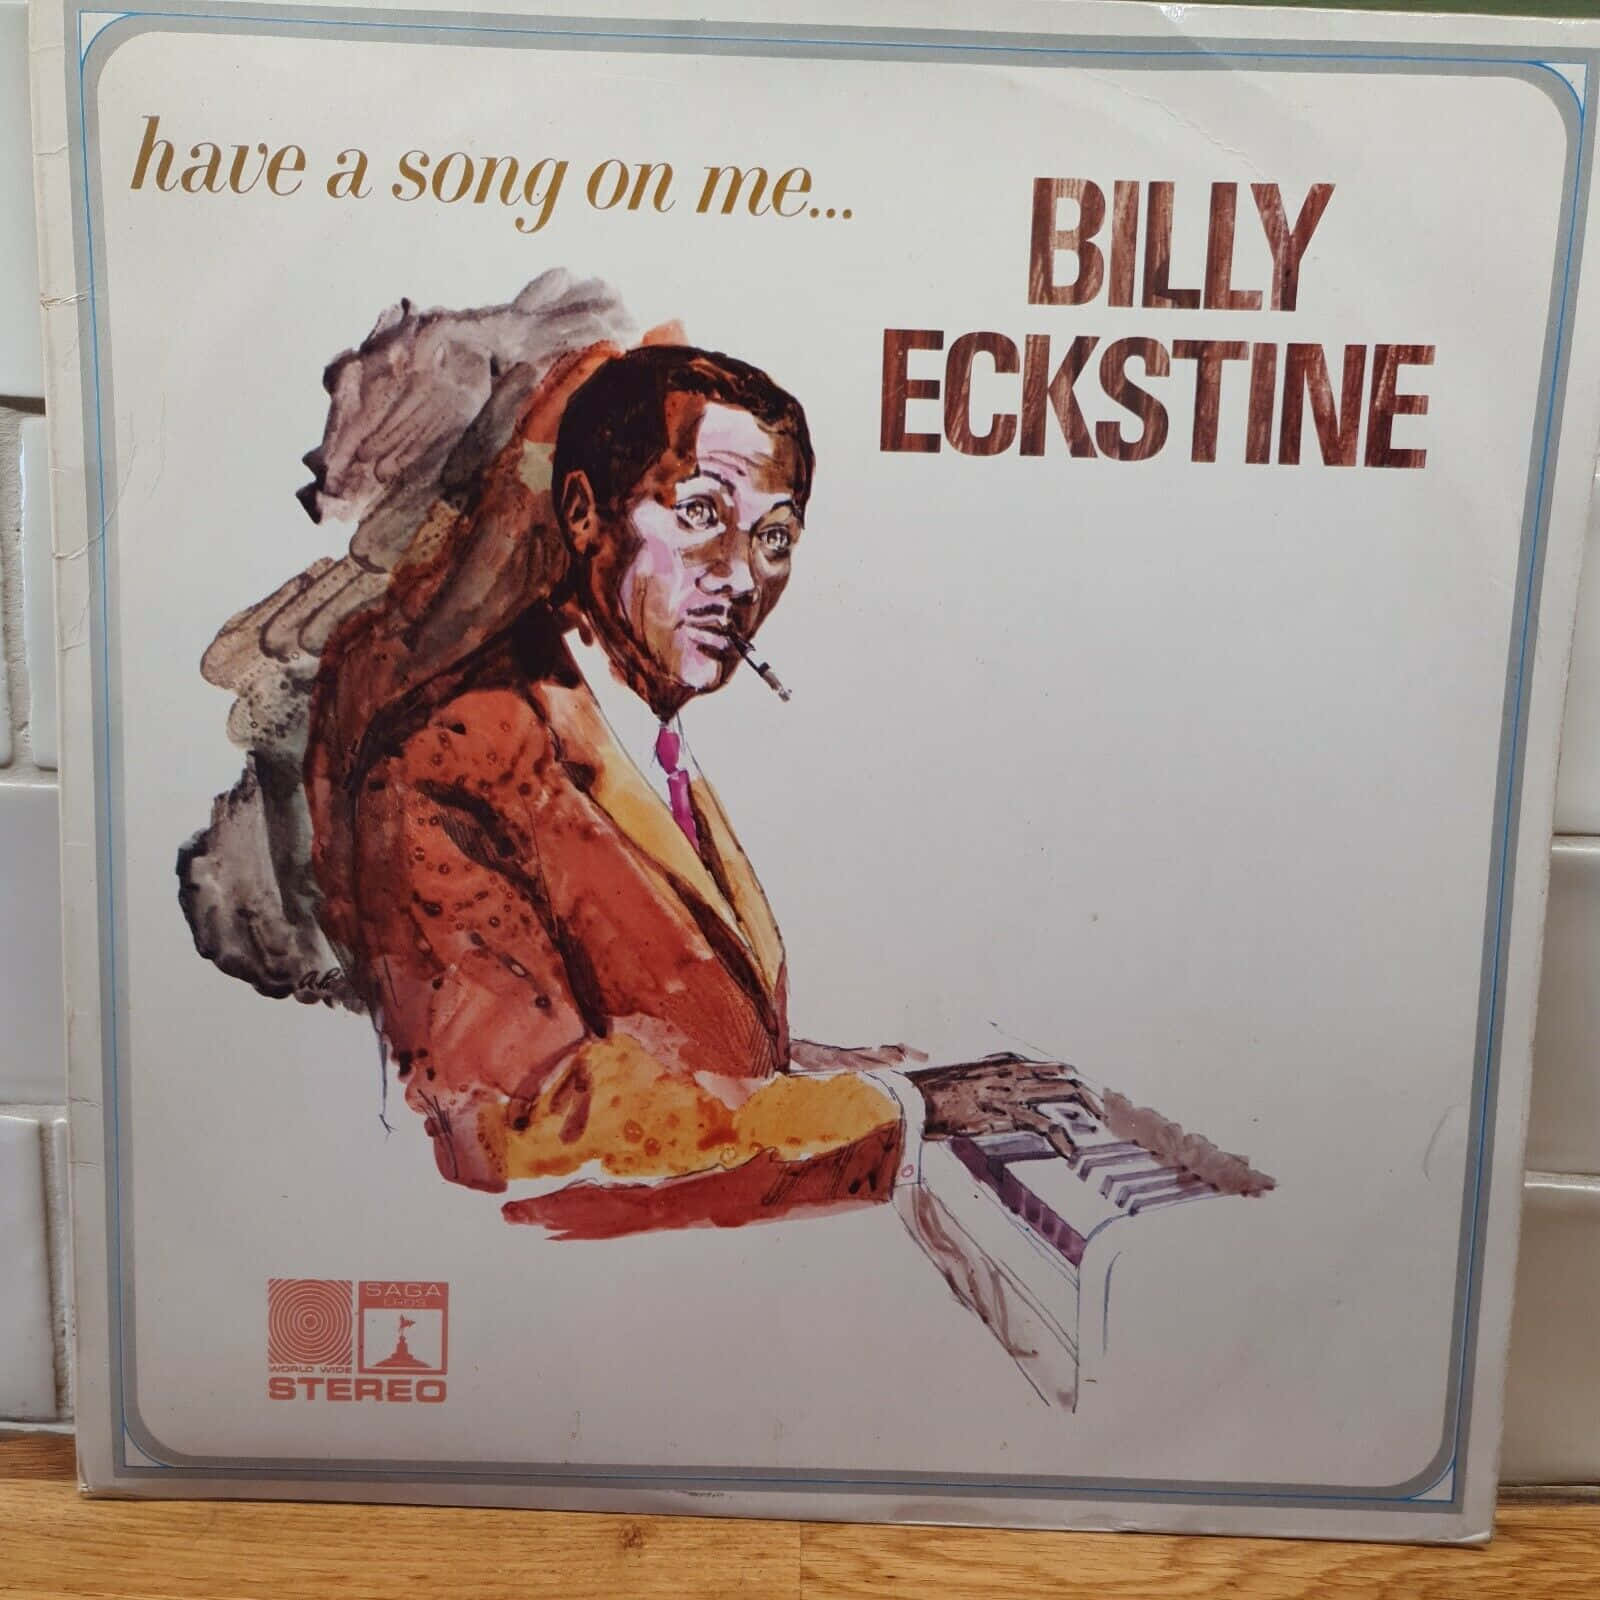 Billy Eckstine har en sang på mig dække design Wallpaper